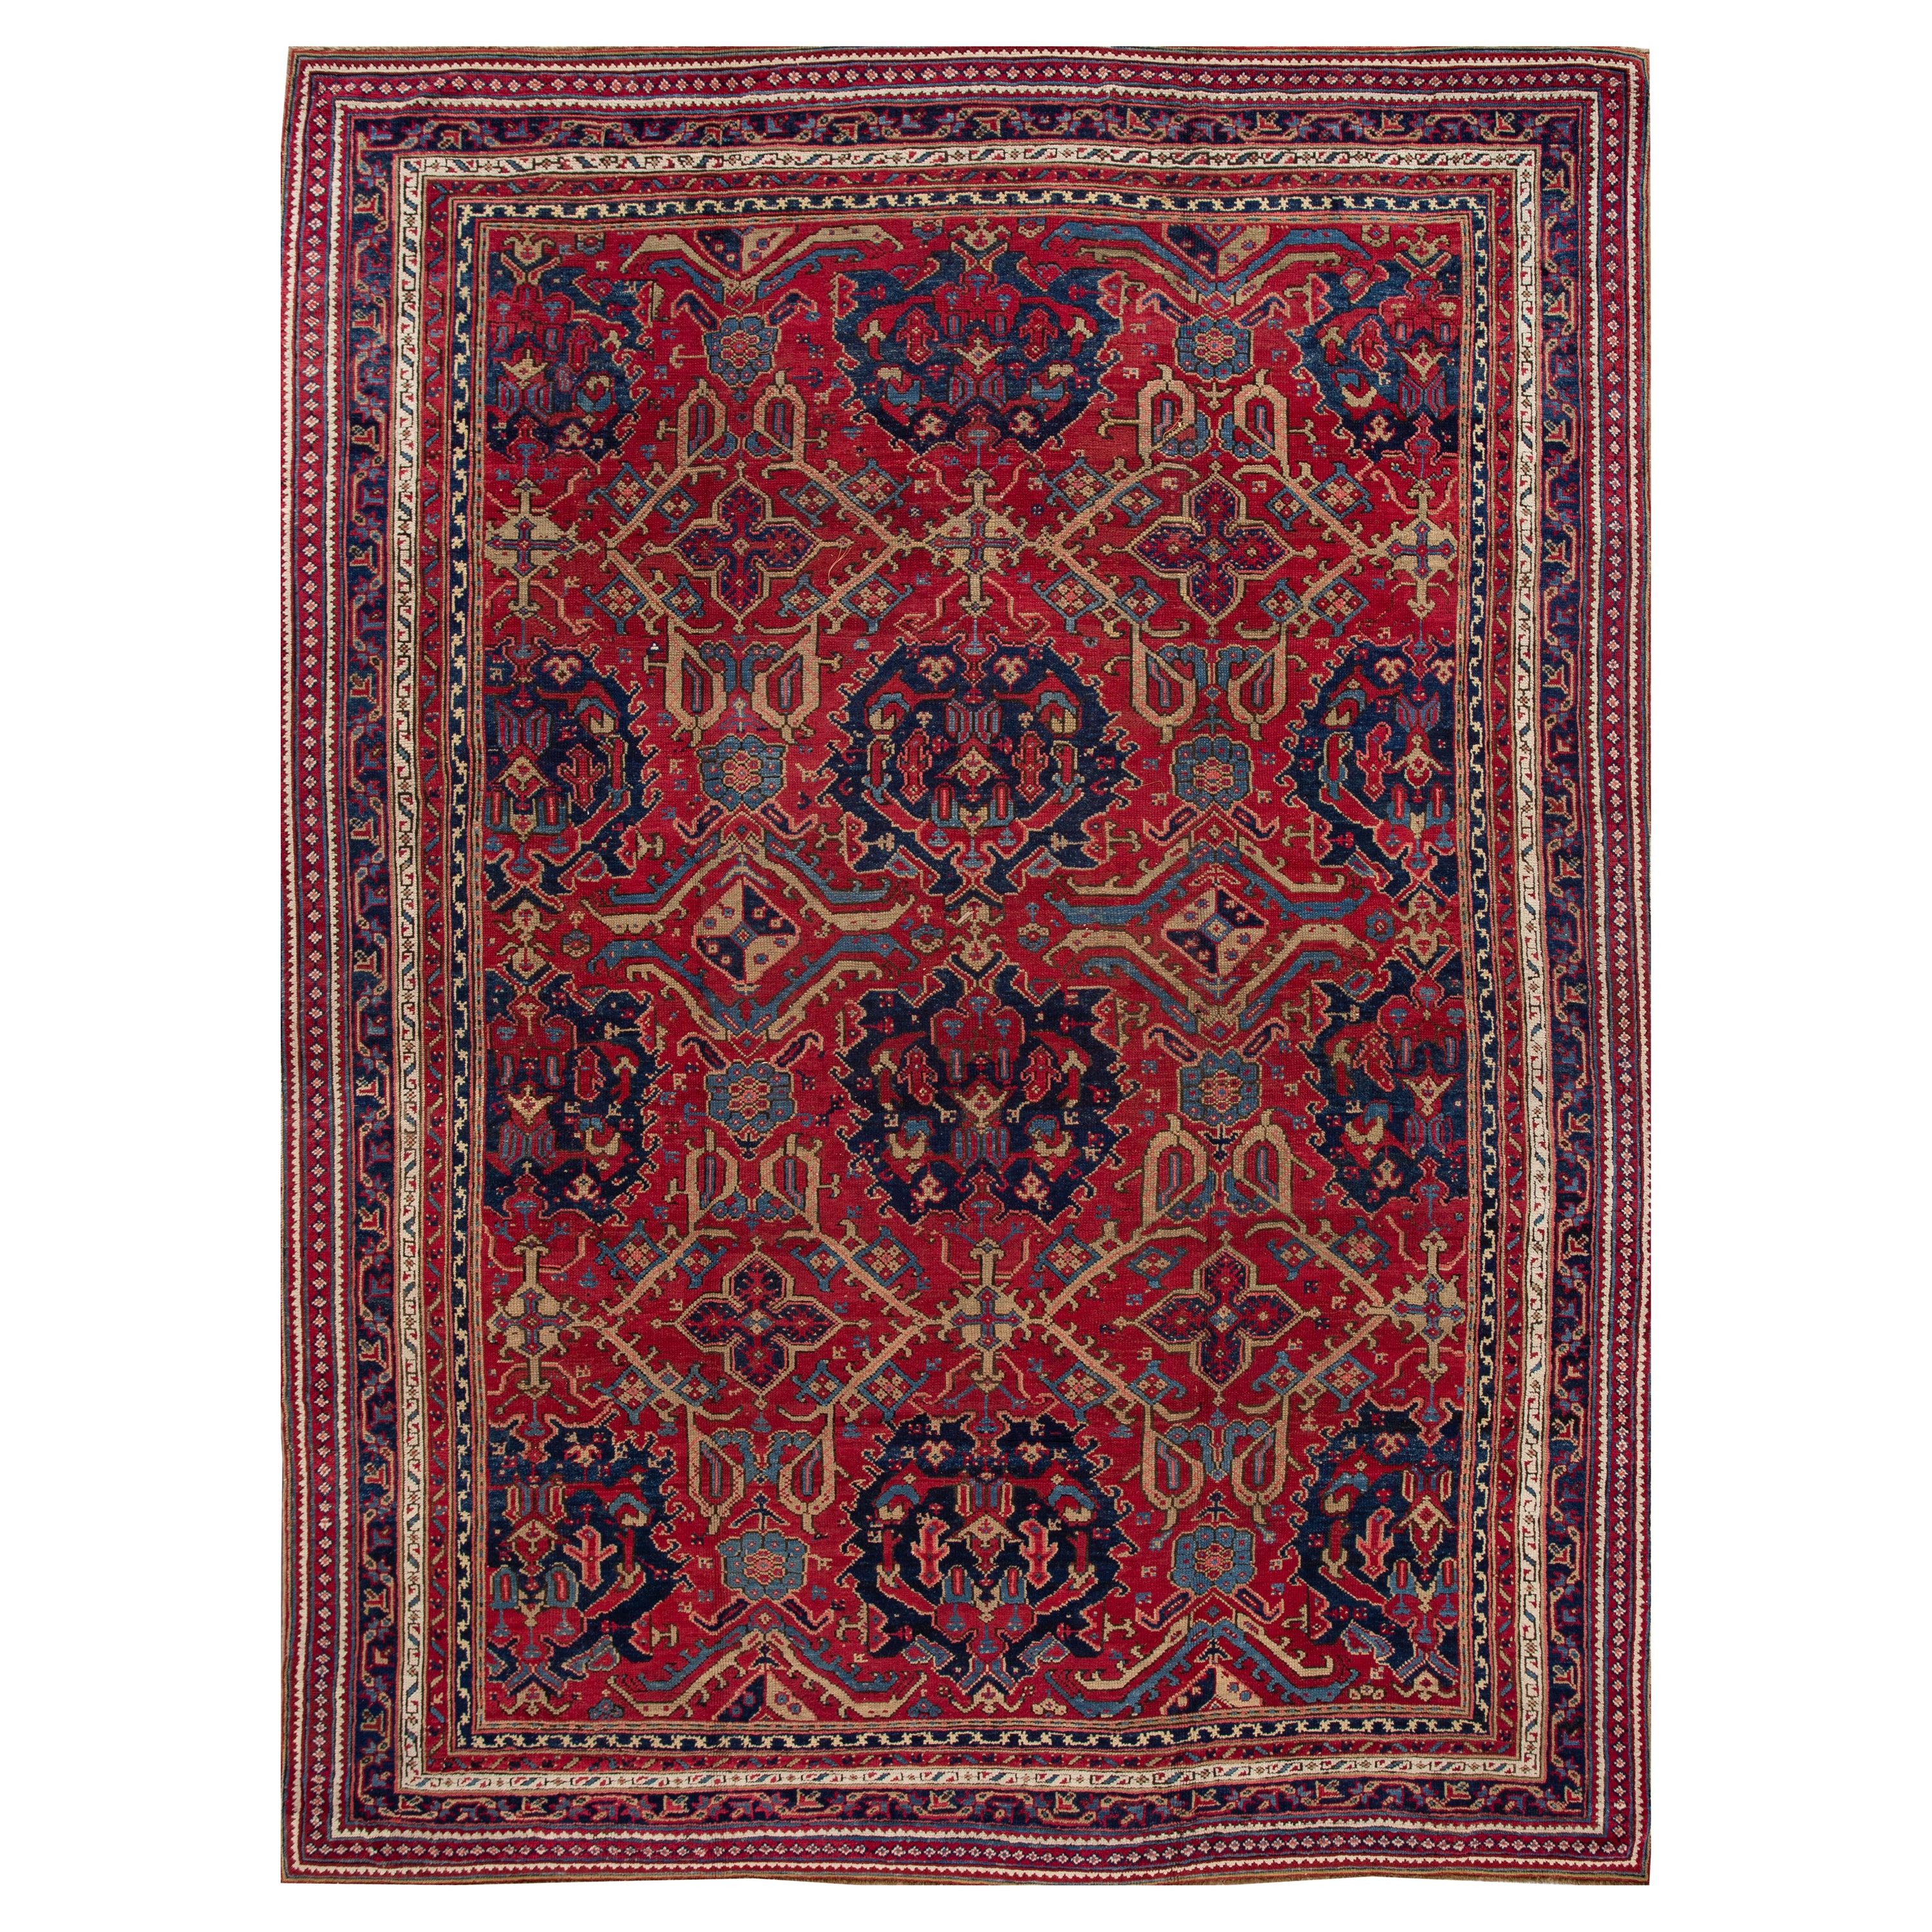 Tapis en laine rouge antique turc Oushak fait à la main, entièrement conçu à la main